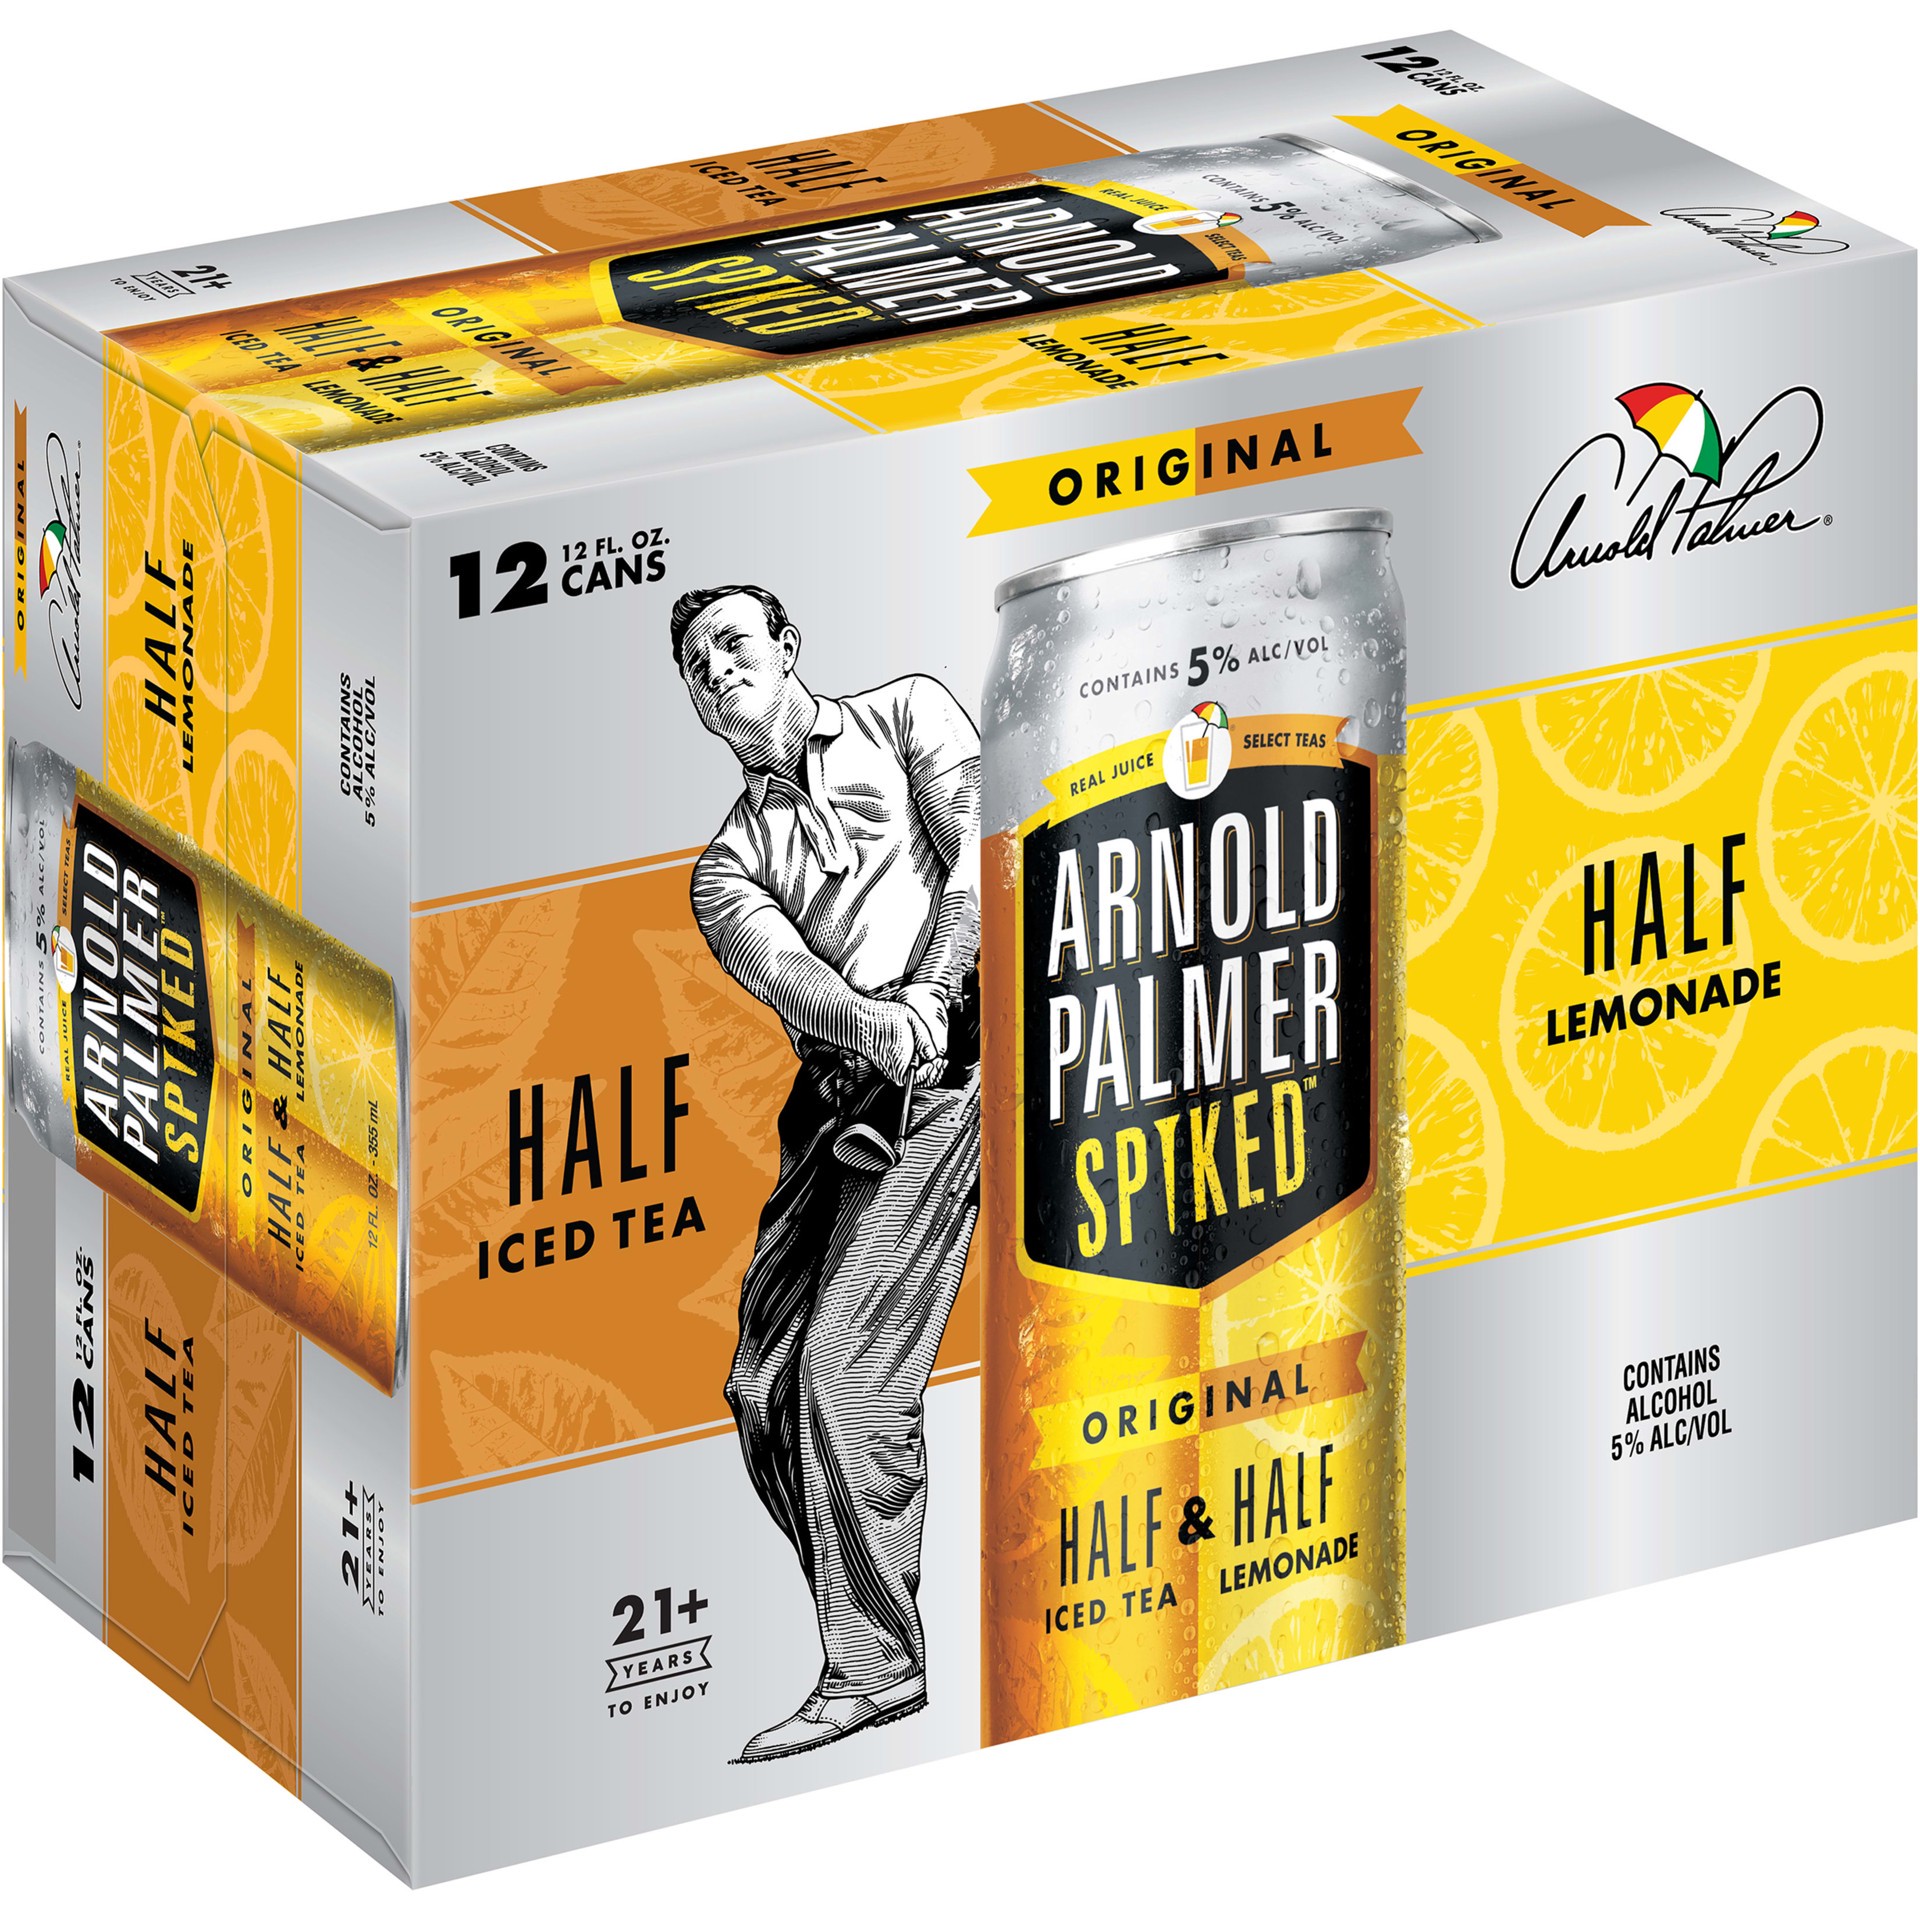 slide 1 of 5, Arnold Palmer Spiked Half & Half Original Arnold Palmer Spiked Original Half & Half Iced Tea Lemonade, 12 Pack, 12 fl oz Cans, 5% ABV, 12 fl oz